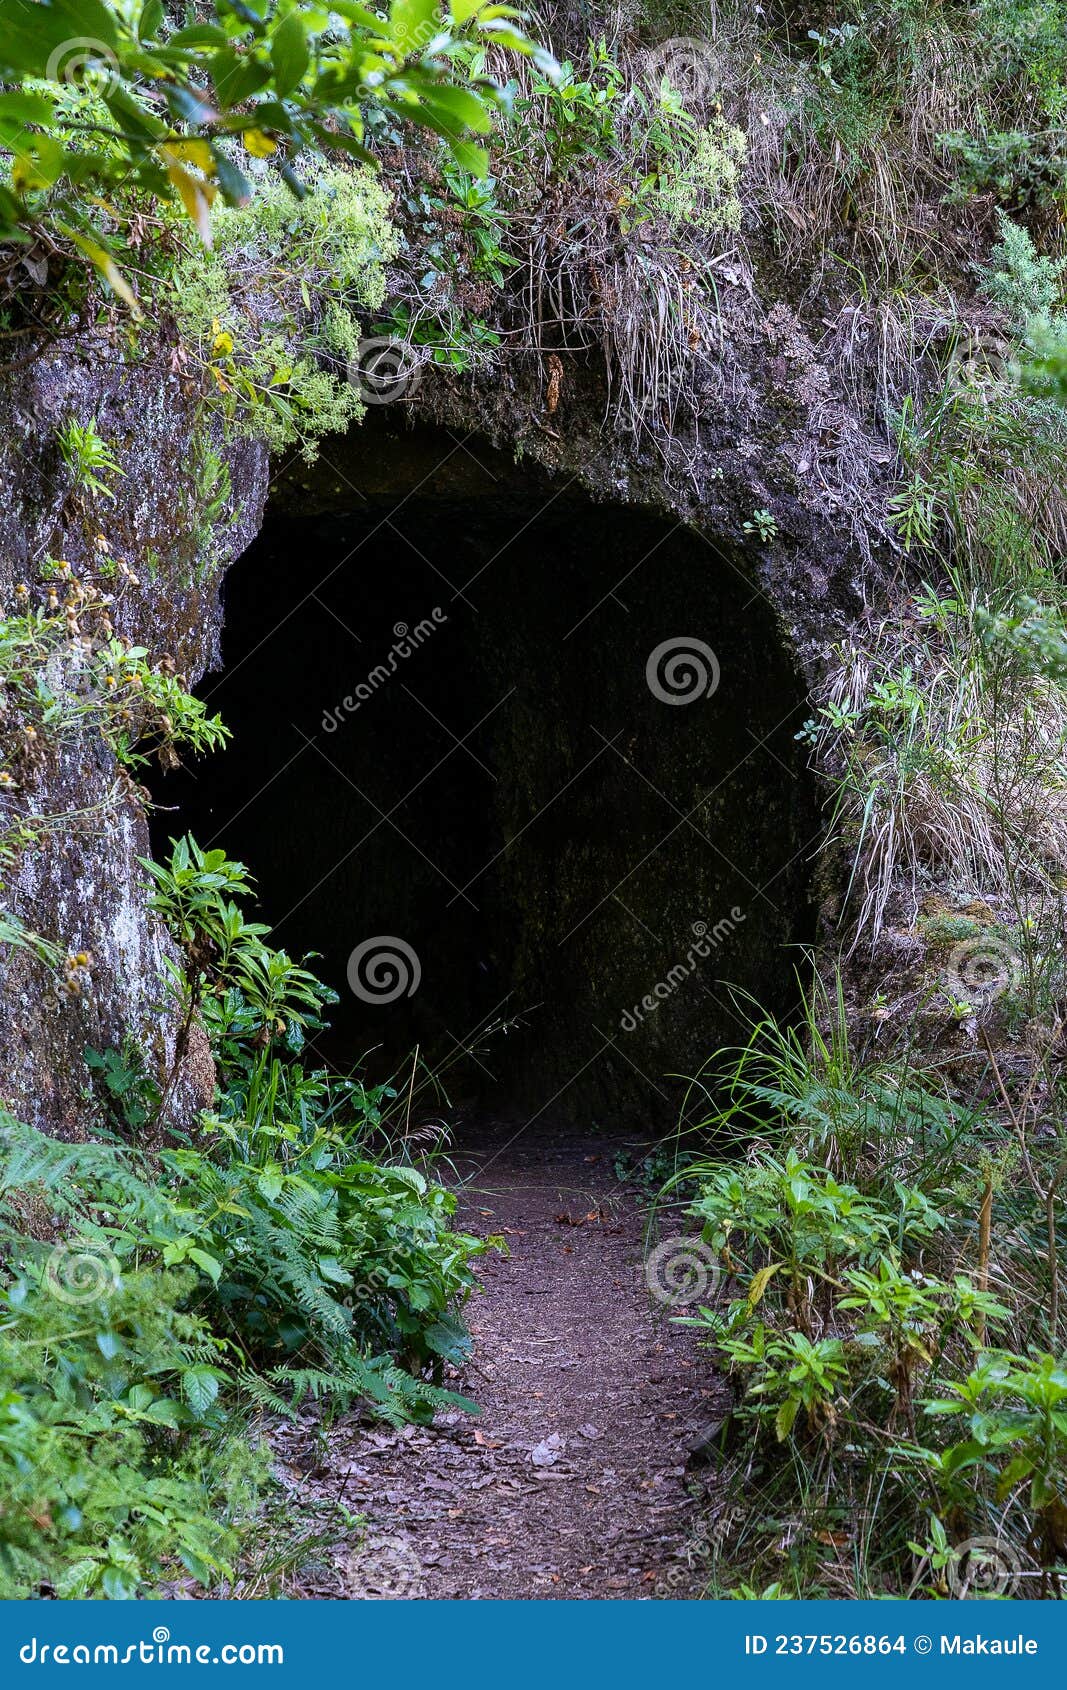 the path by caminho do pinaculo e folhadal levada